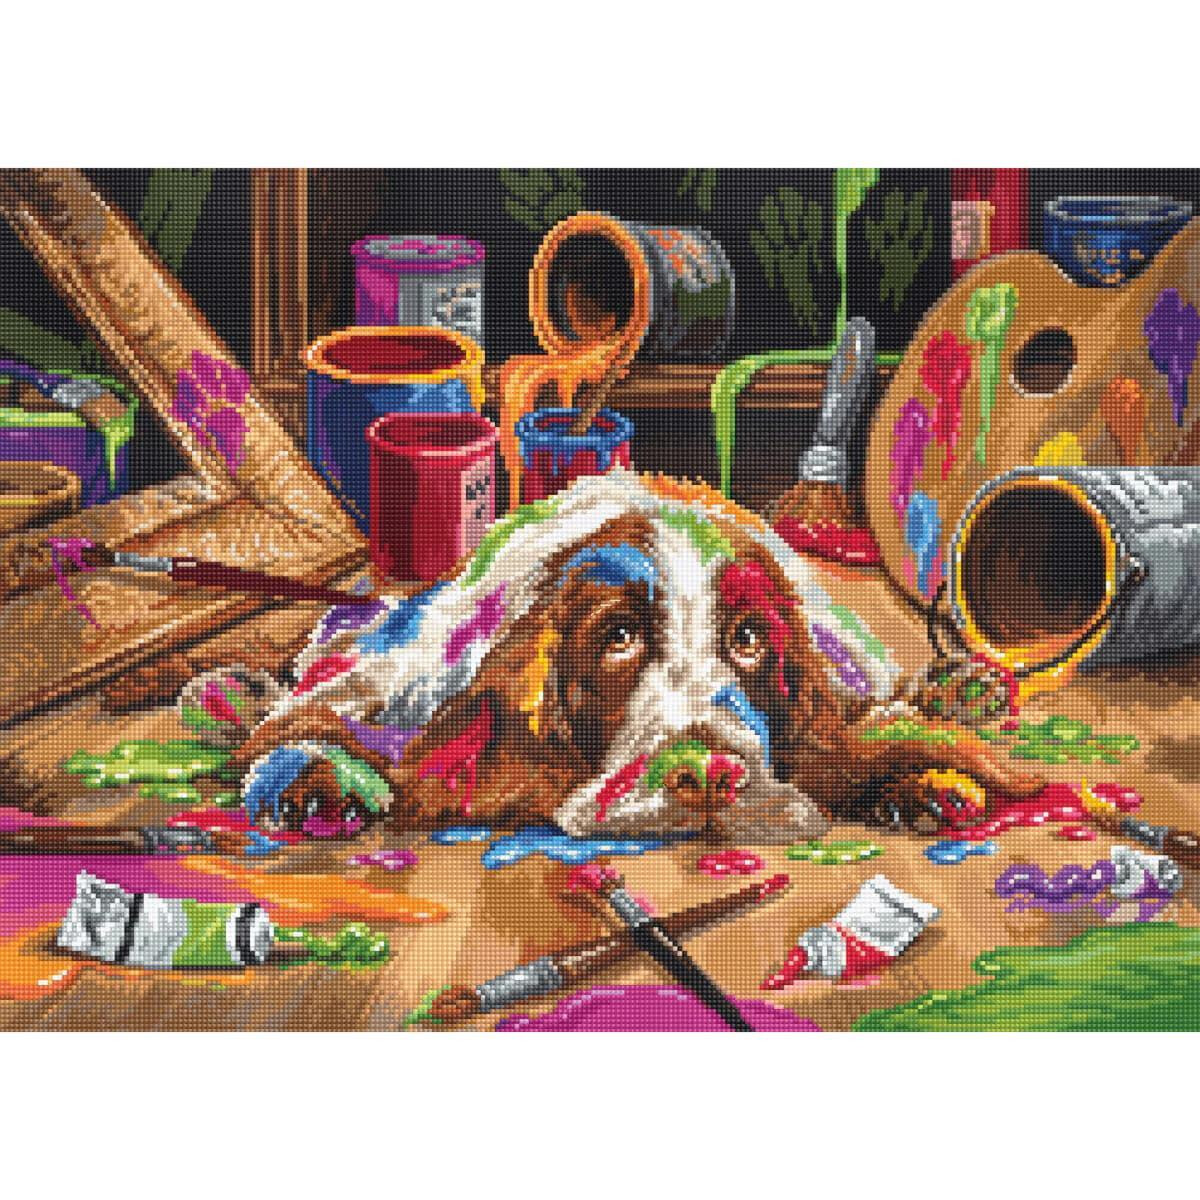 Een hond ligt op een houten vloer bedekt met kleurrijke...